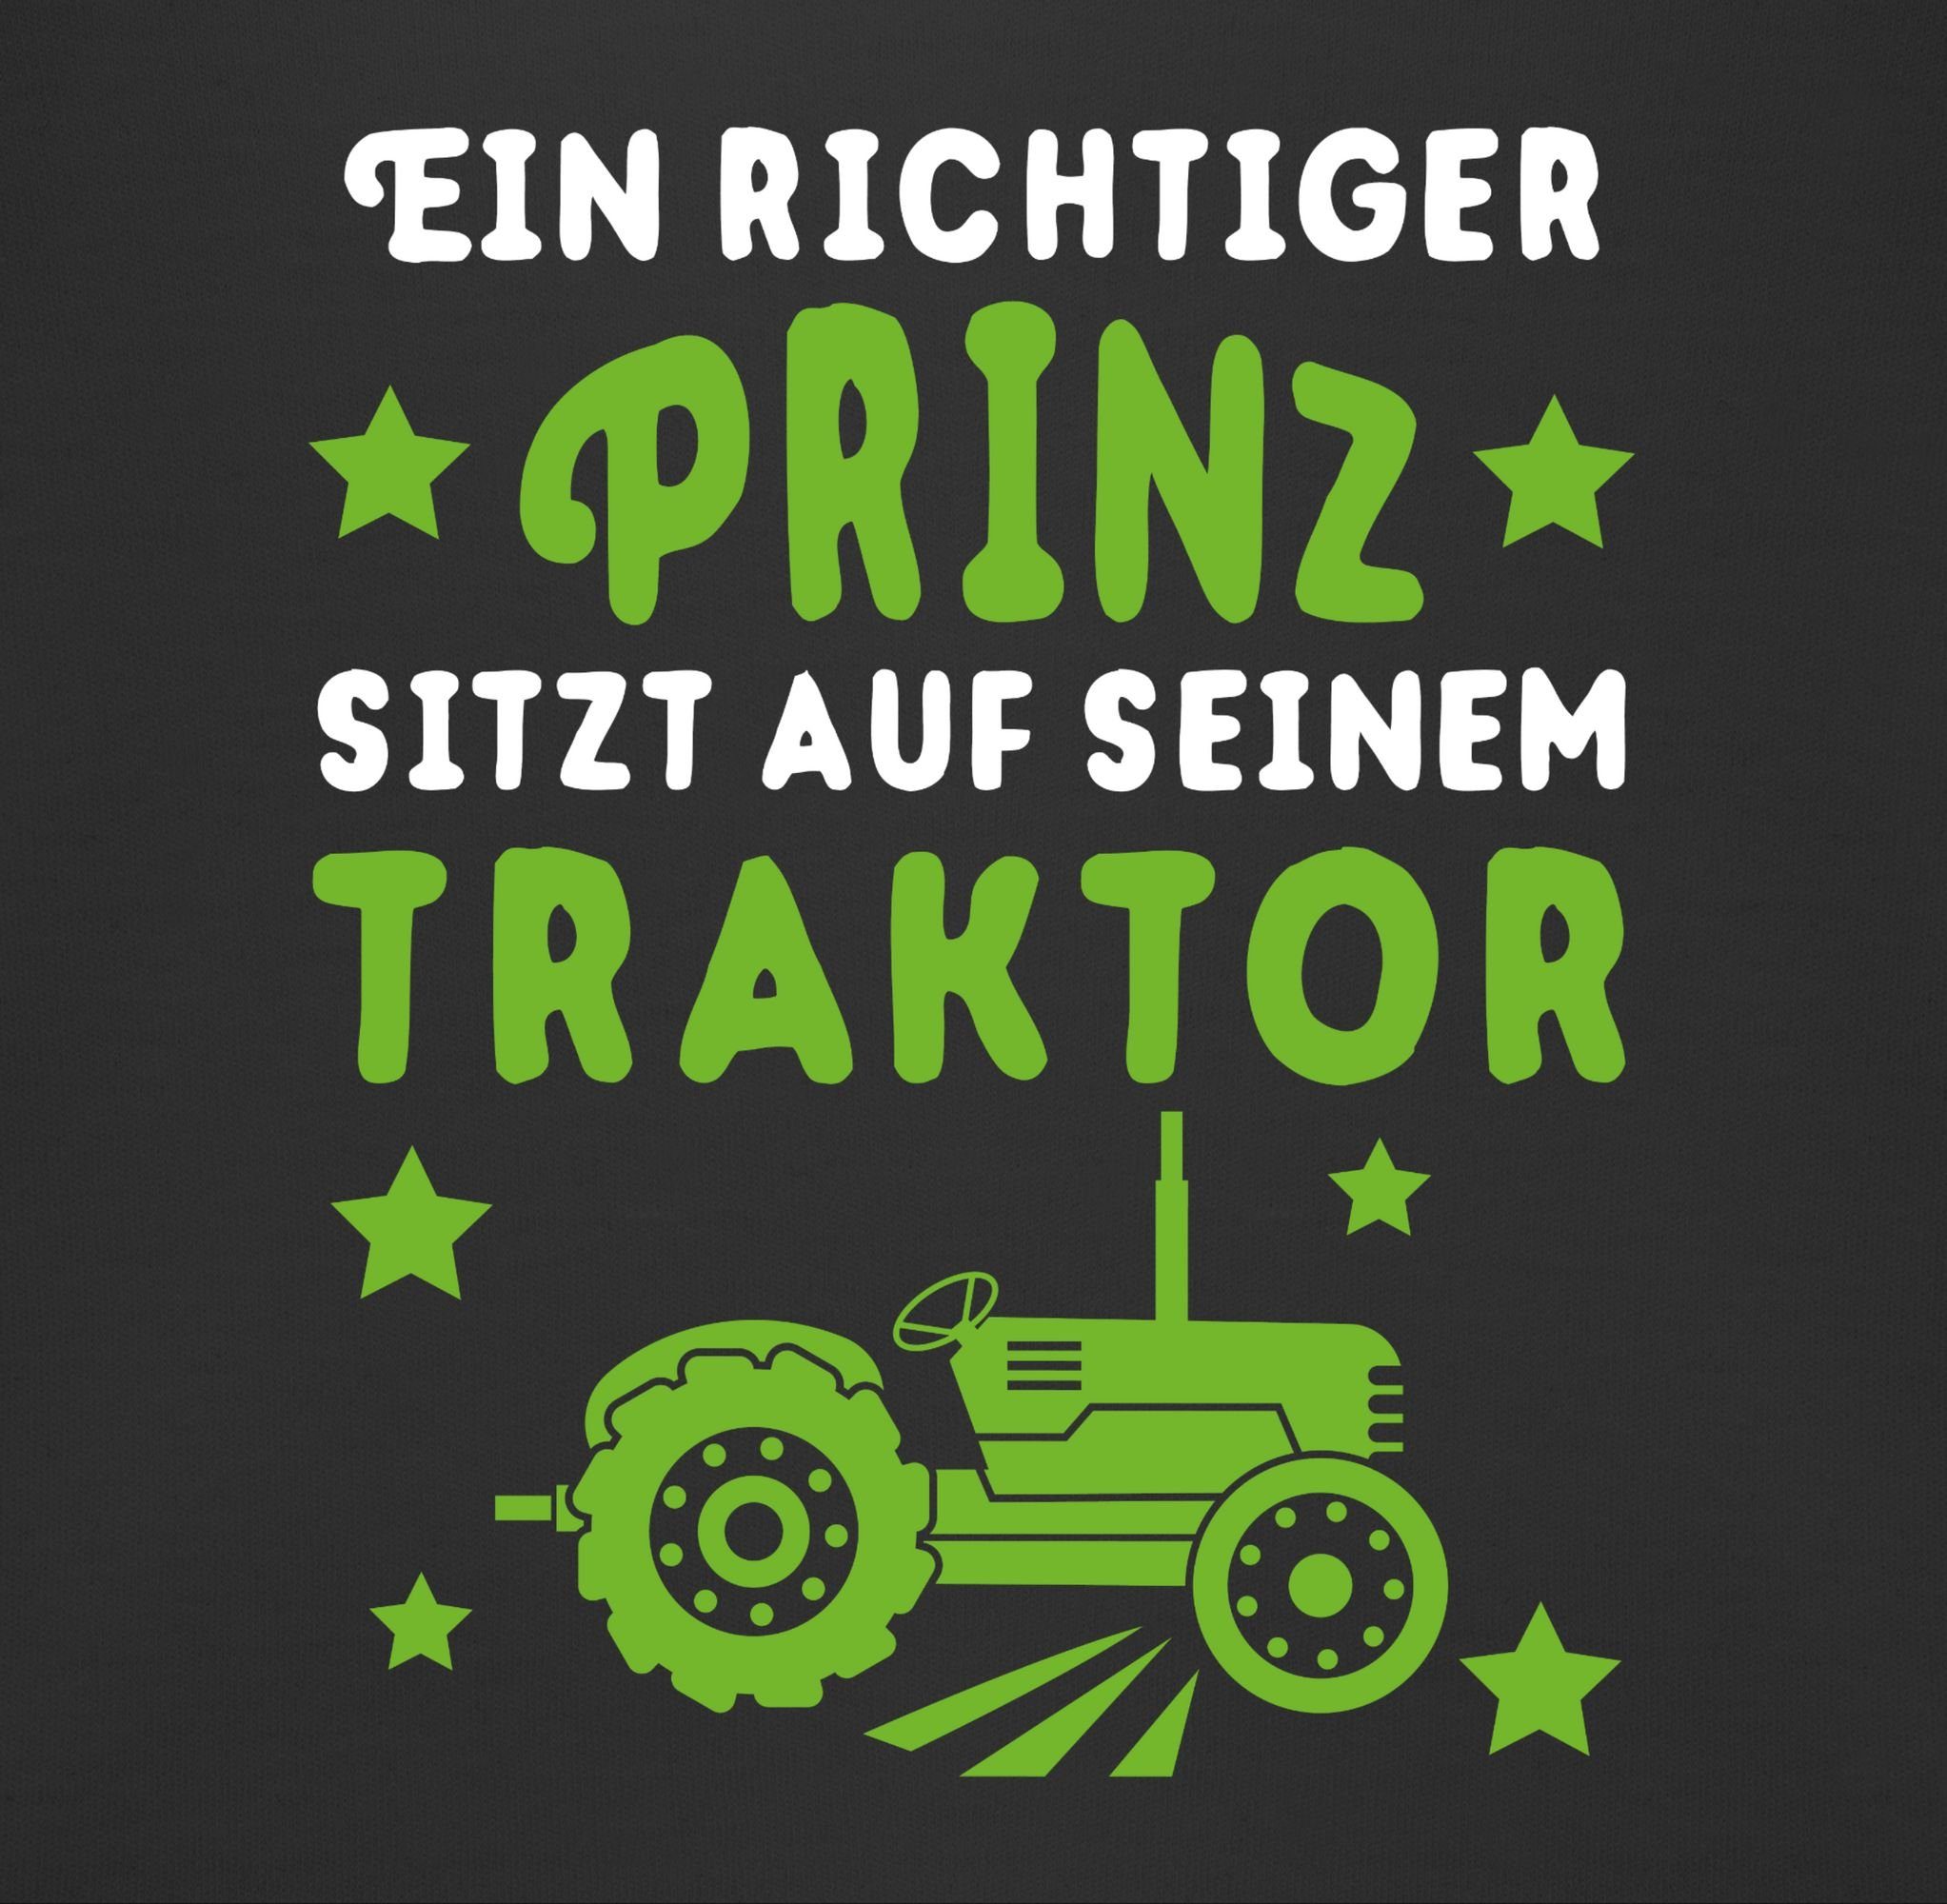 3 Prinz Traktor, Lätzchen seinem sitzt Traktor Shirtracer auf Schwarz richtiger Ein